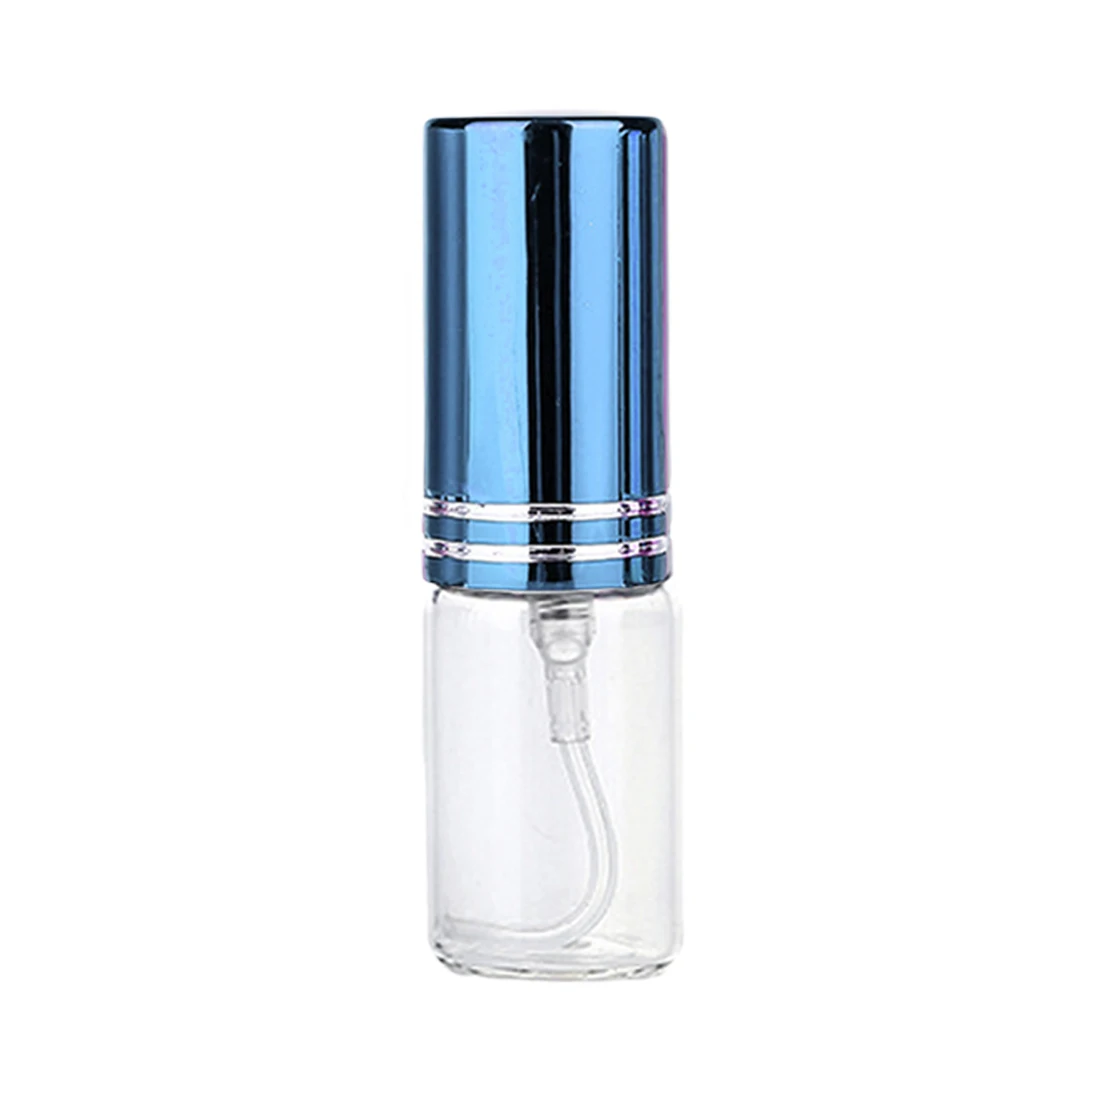 5 мл косметический образец парфюма маленький образец Дозирующий Алюминиевый распылитель мини ультра-тонкий противотуманный стеклянный прессованный флакон - Цвет: blue